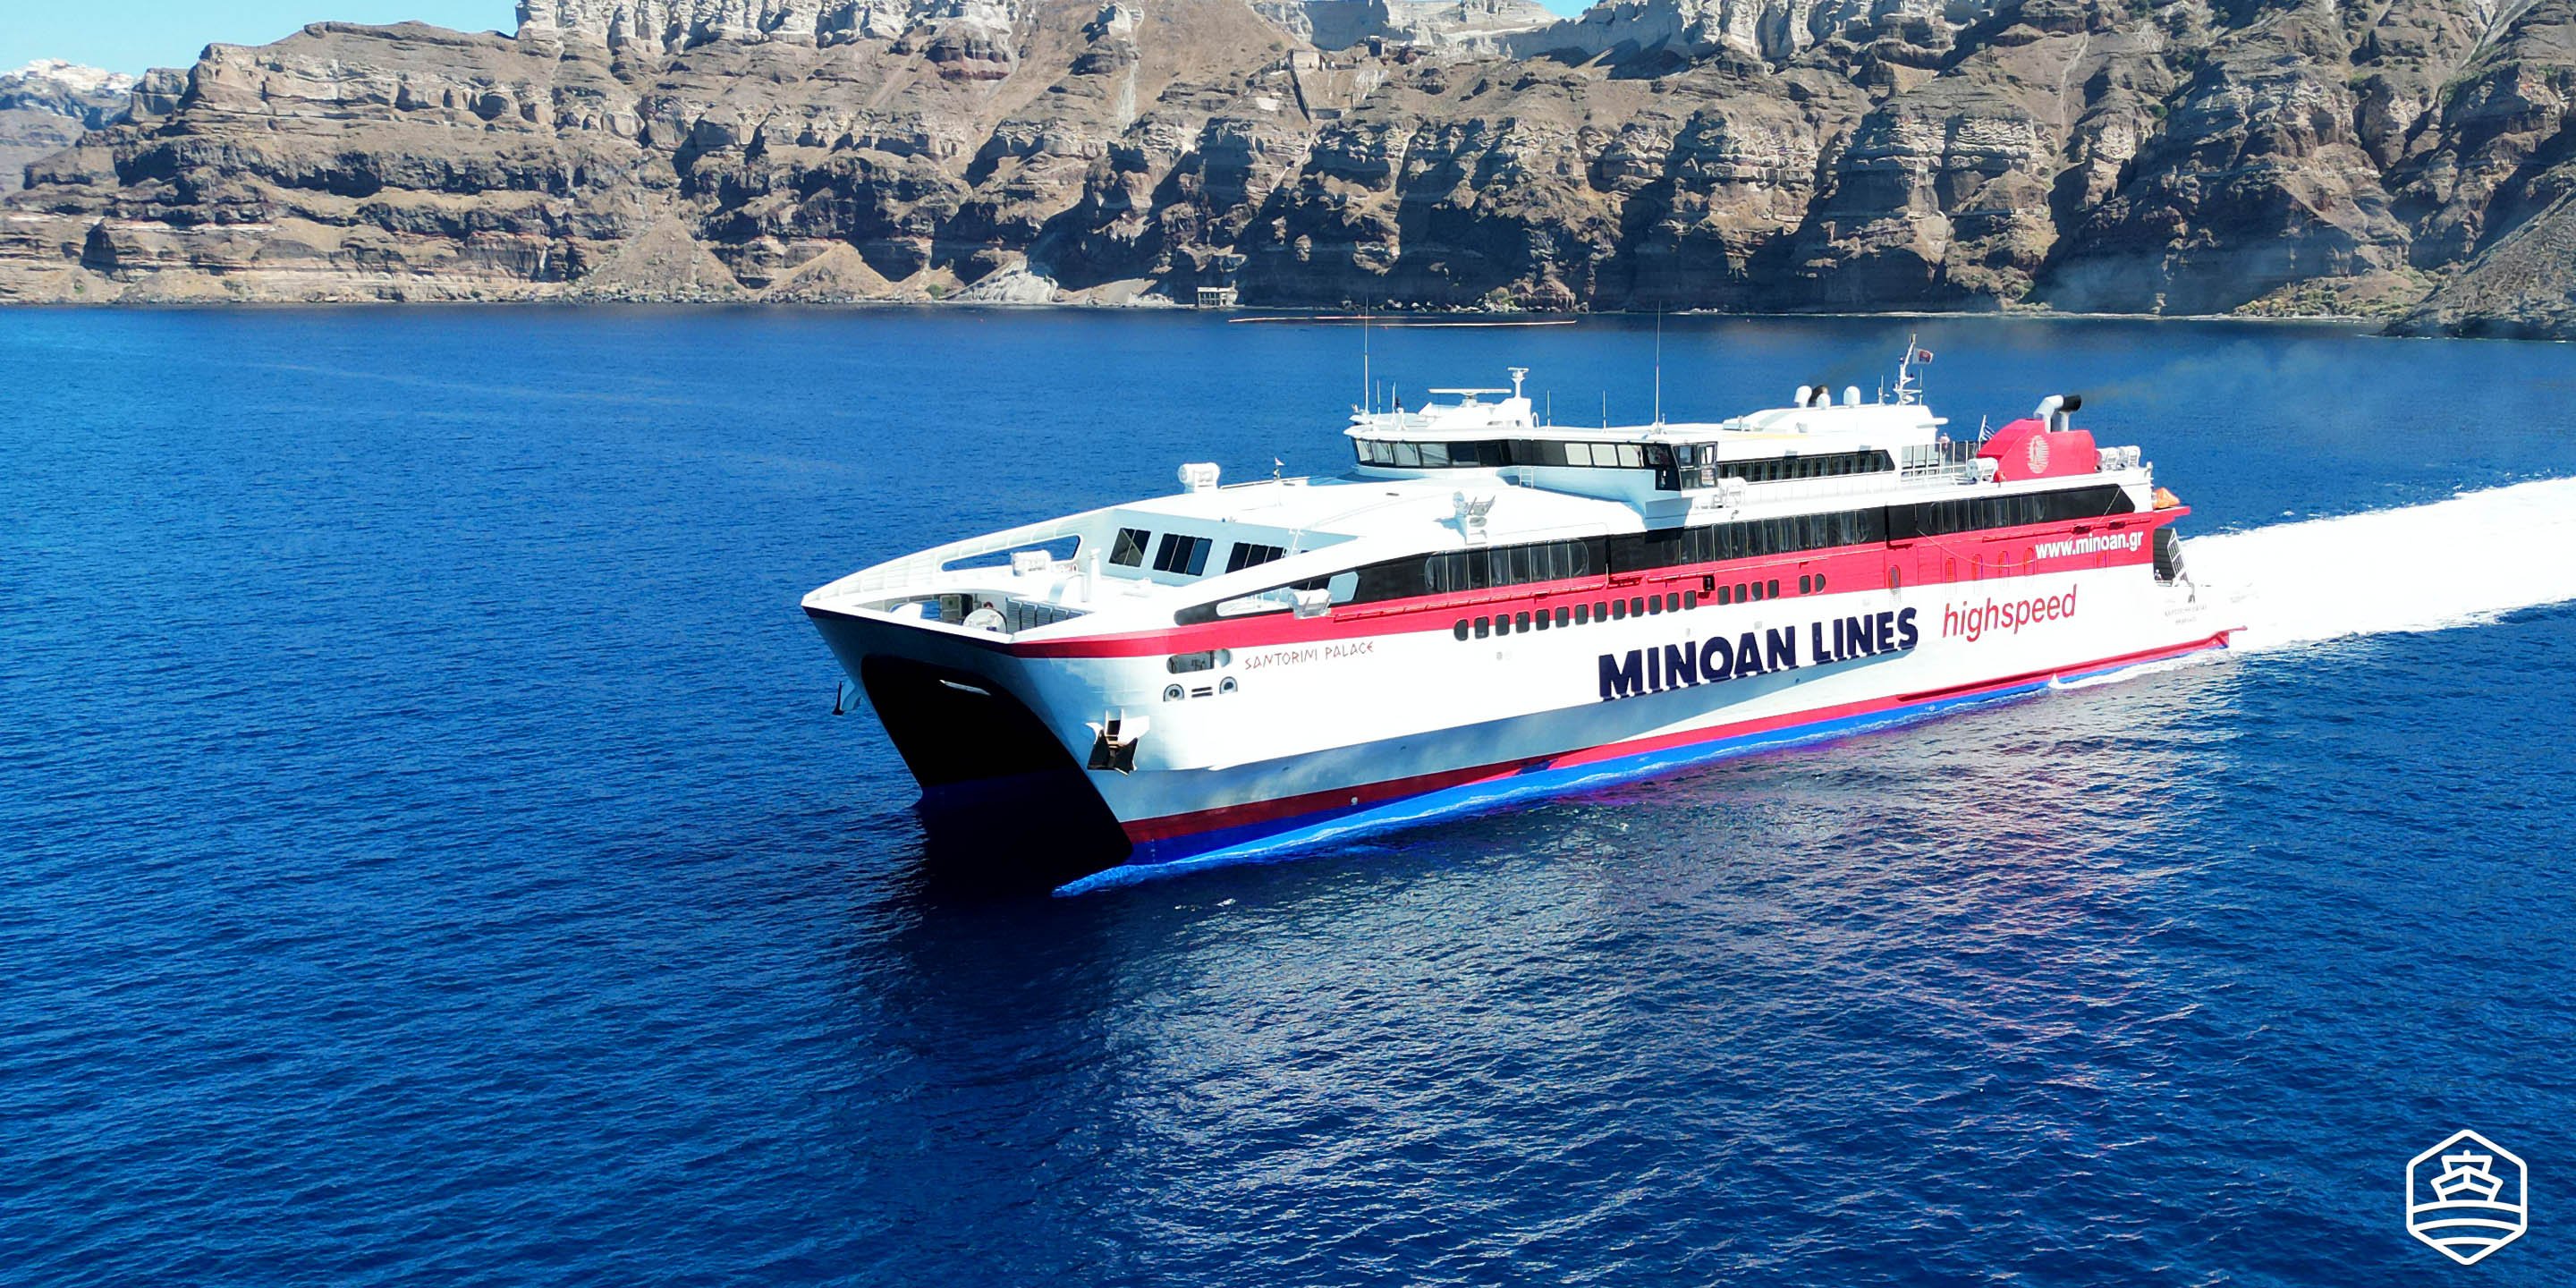 Il traghetto ad alta velocità Santorini Palace of Minoan Lines che effettua la rotta da Santorini a Creta Heraklion